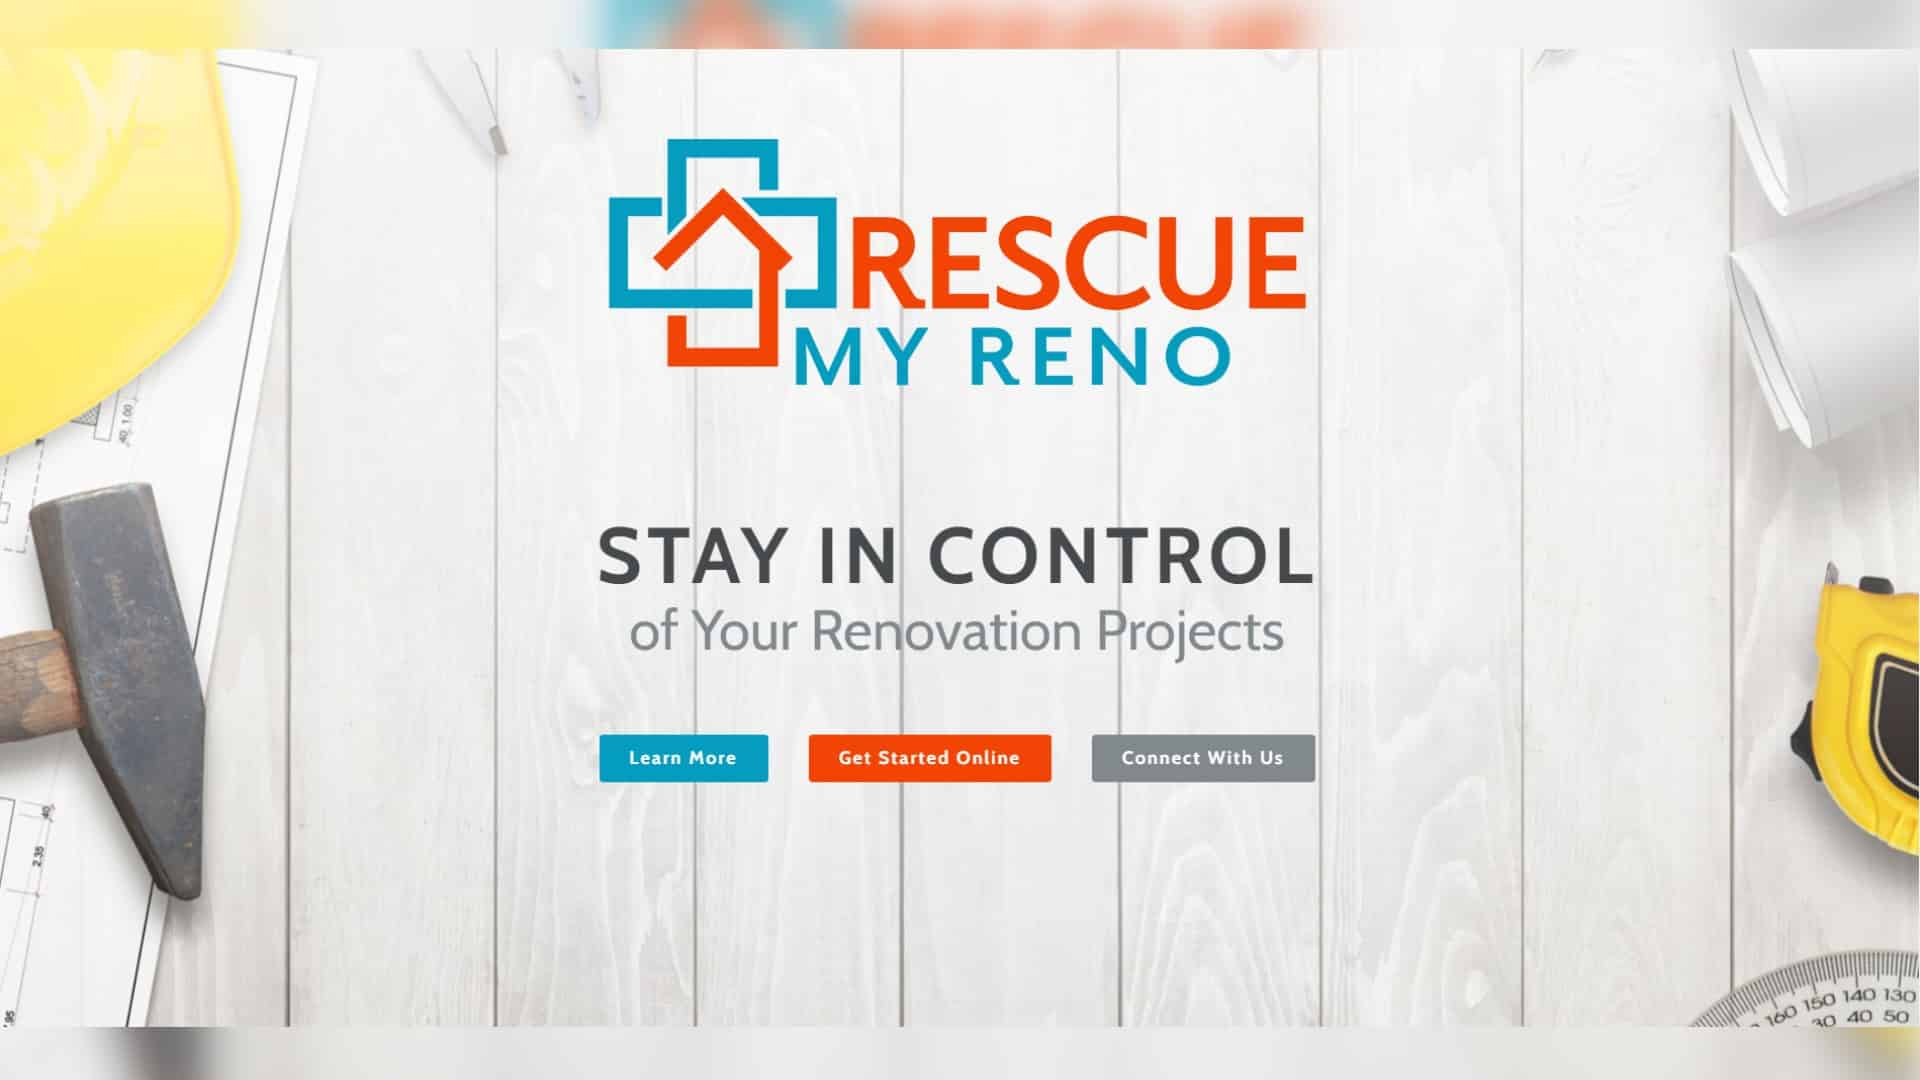 Rescue My Reno Website Design Project